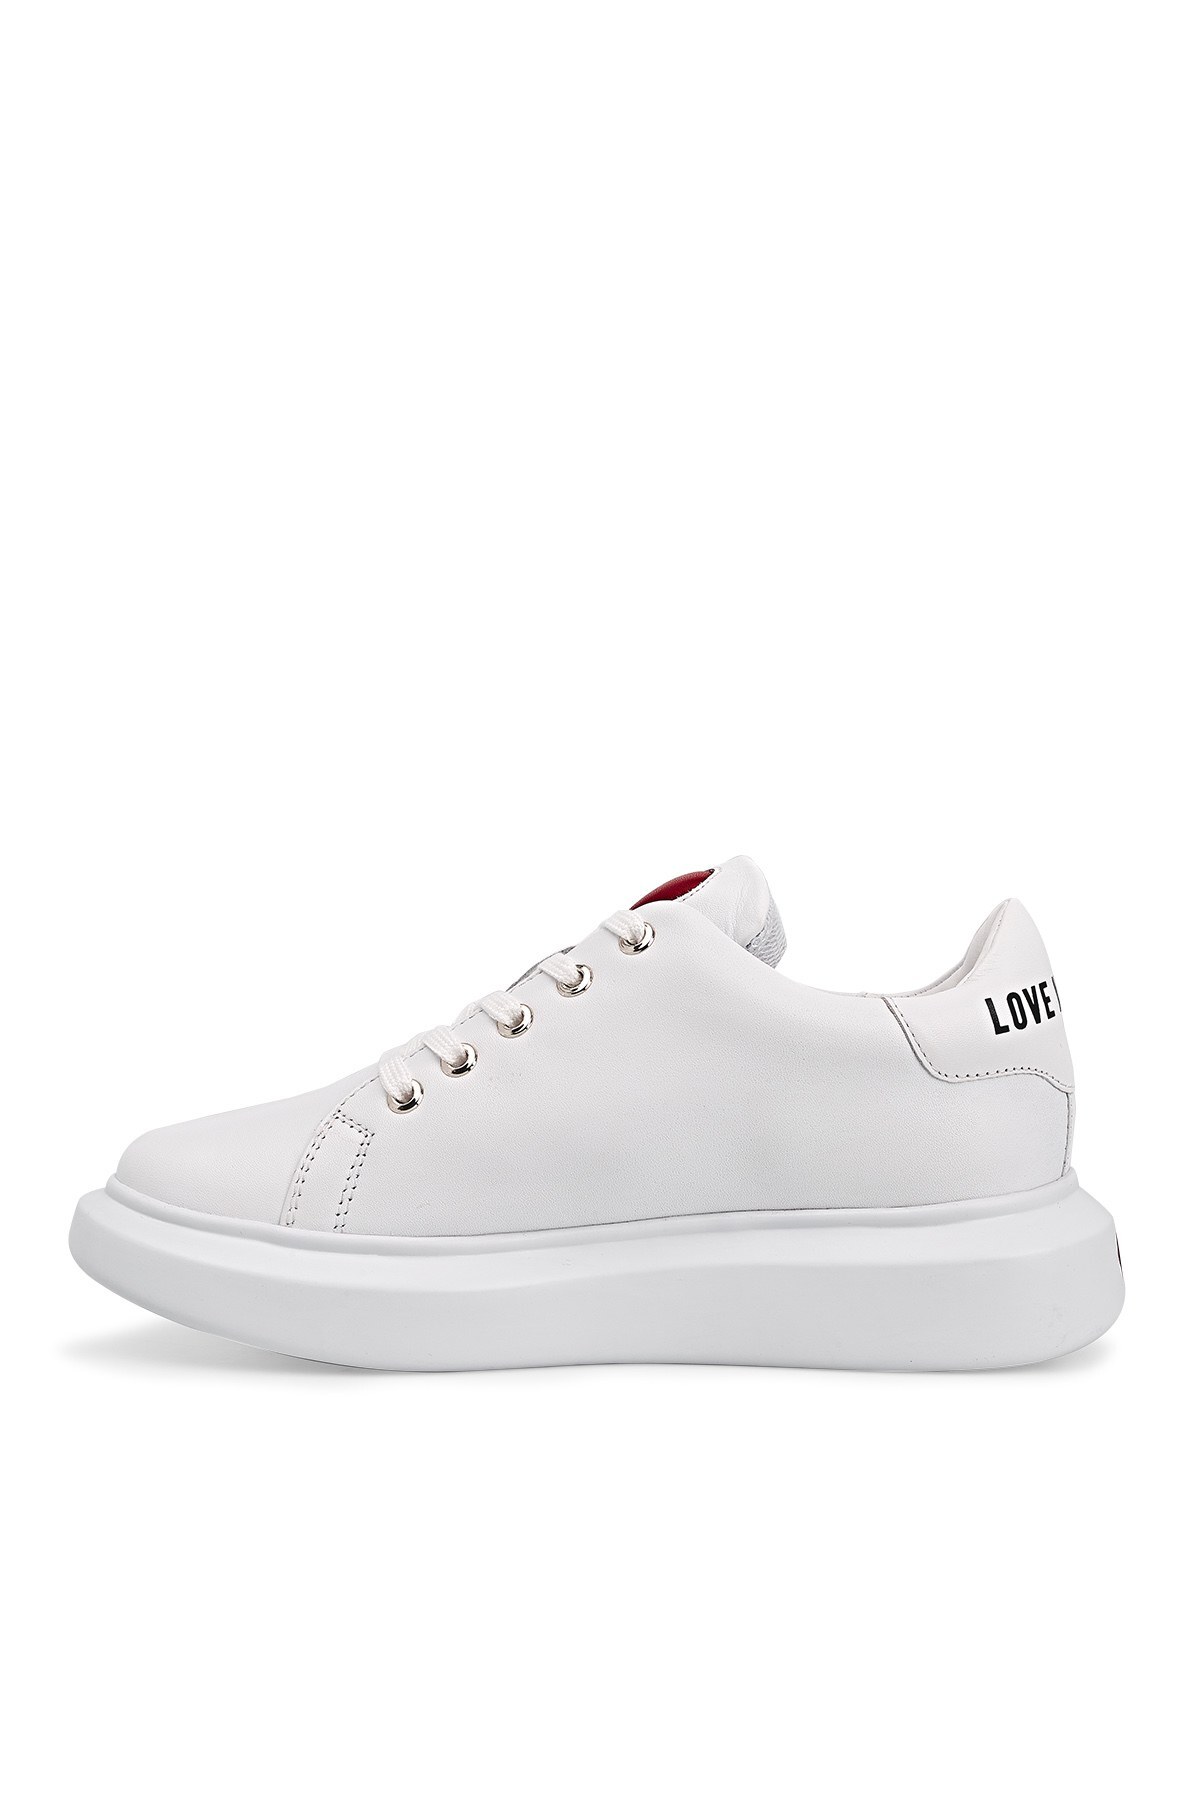 Love Moschino Sneaker Kadın Ayakkabı JA15204G1CIA0100 BEYAZ